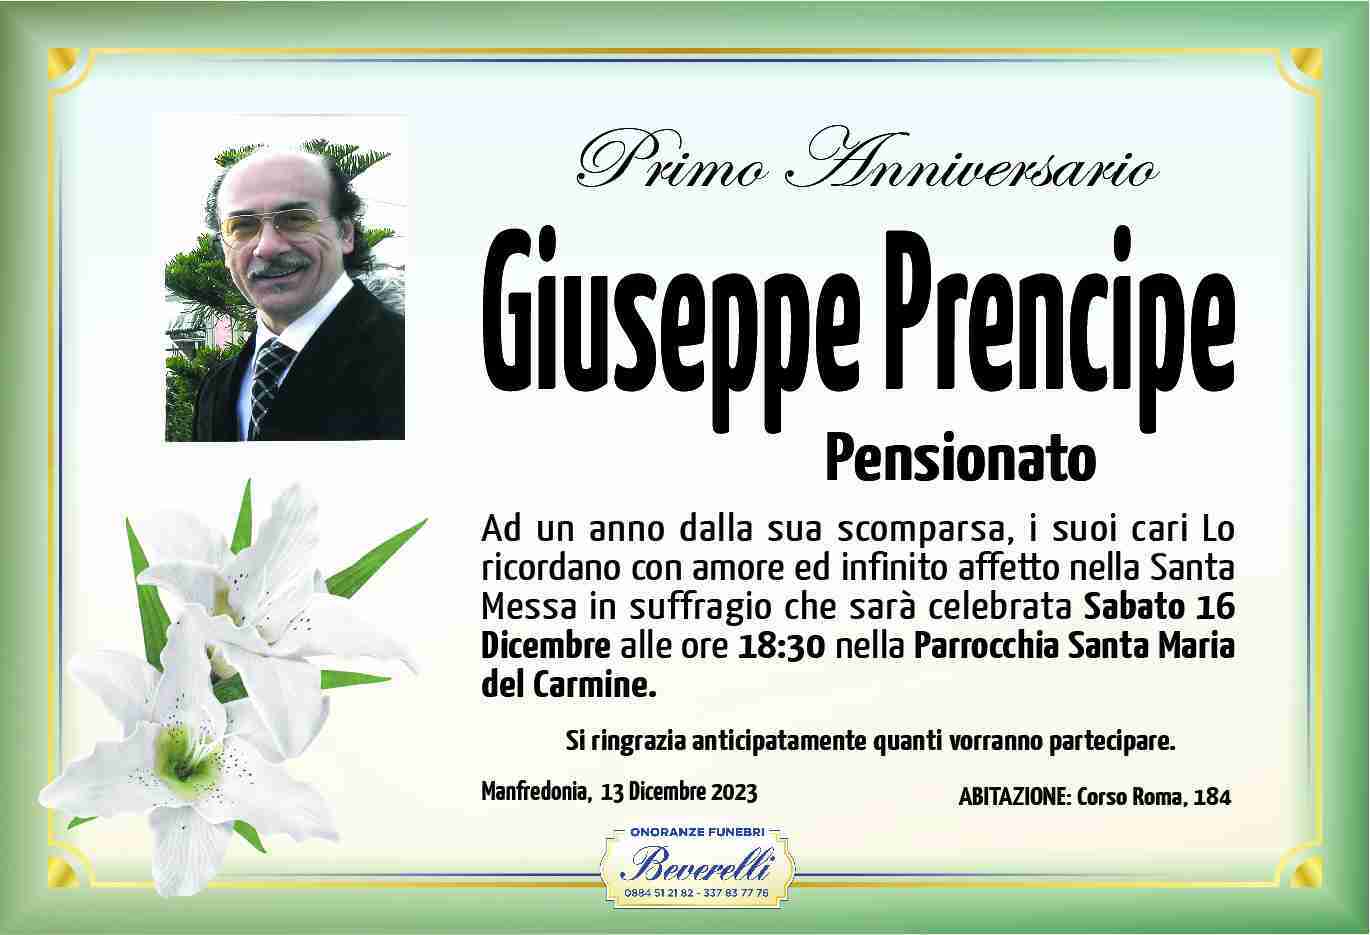 Giuseppe Prencipe